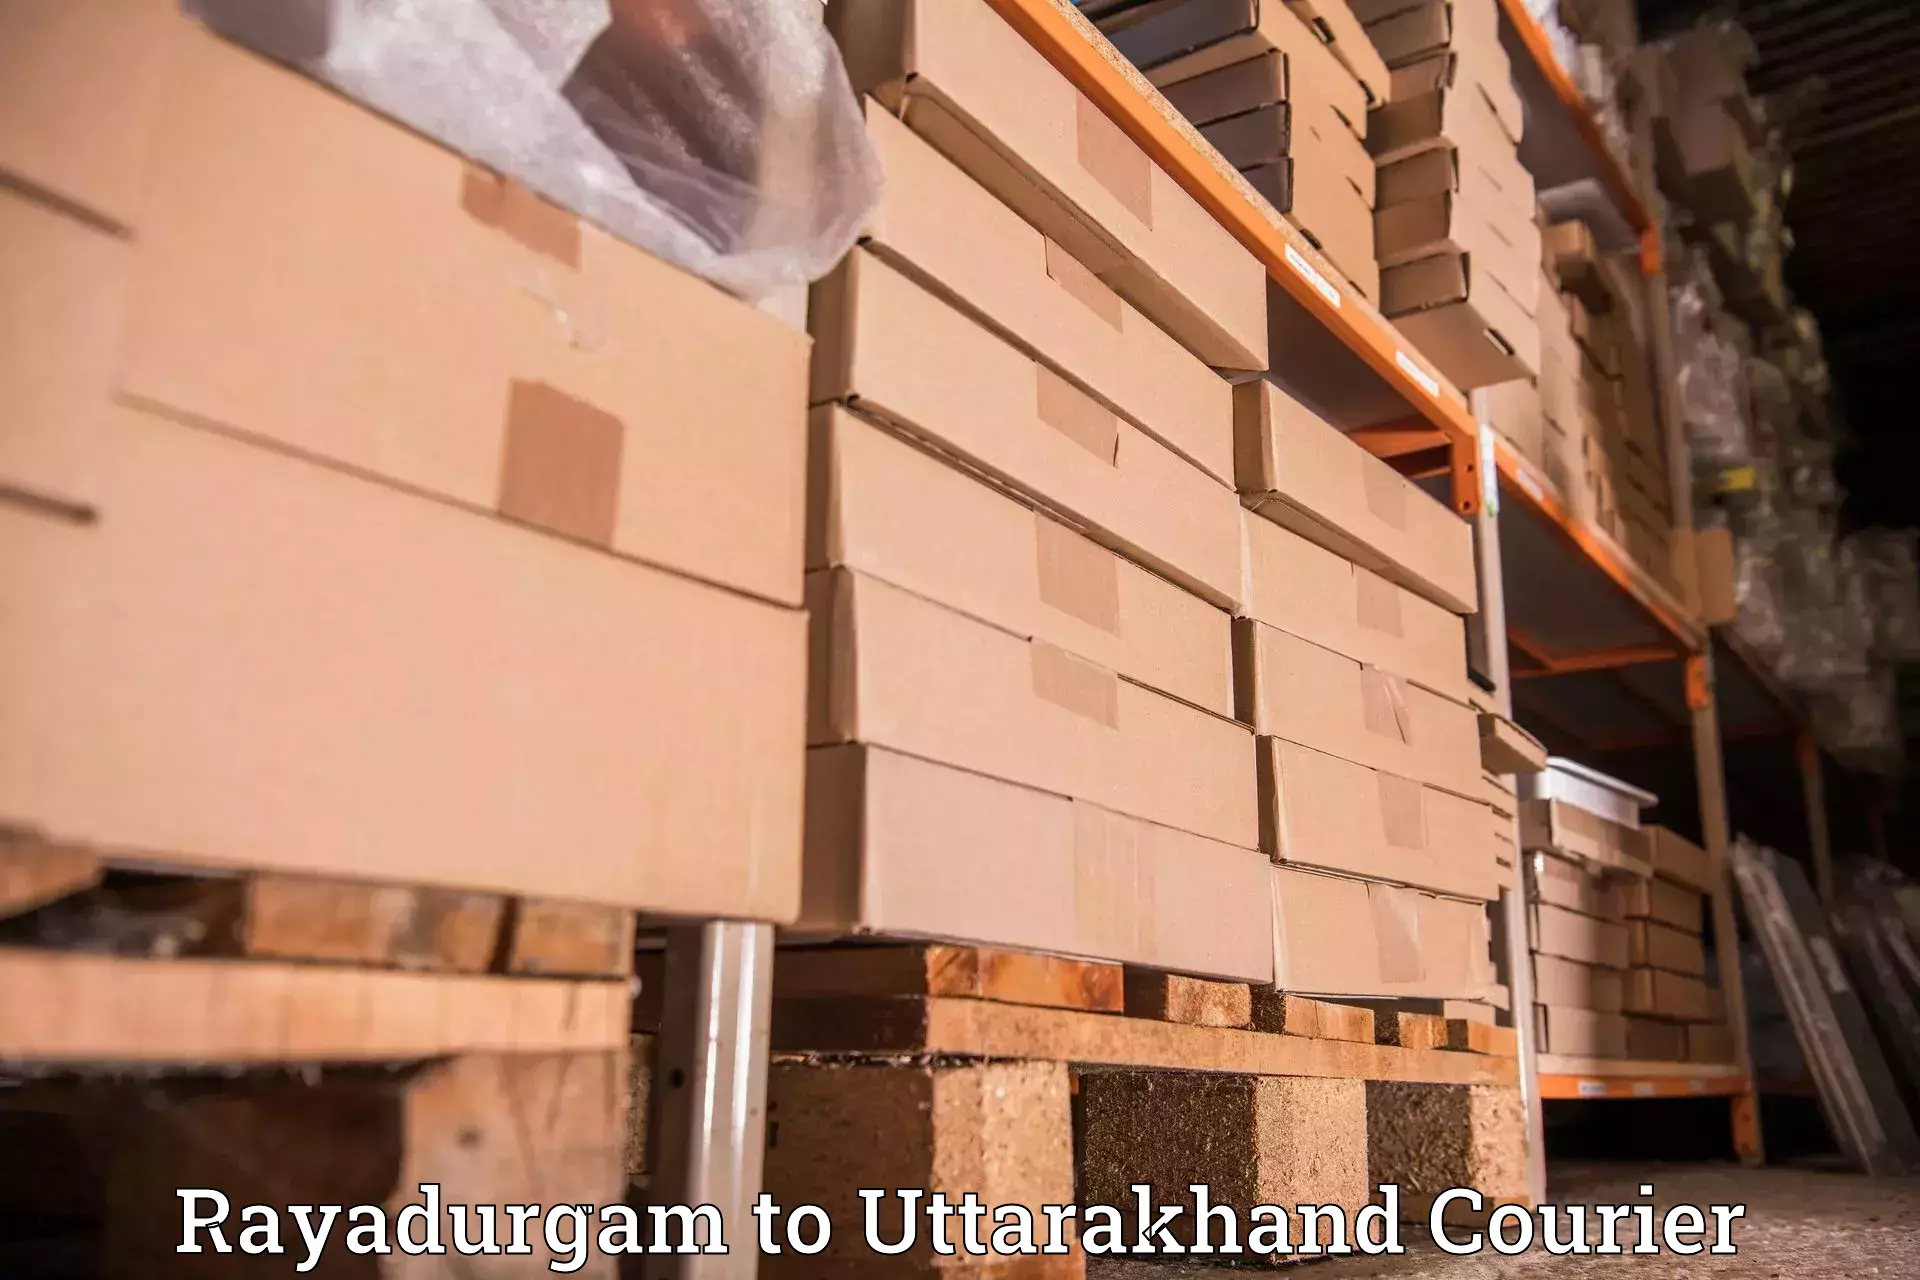 Efficient logistics management Rayadurgam to Gopeshwar